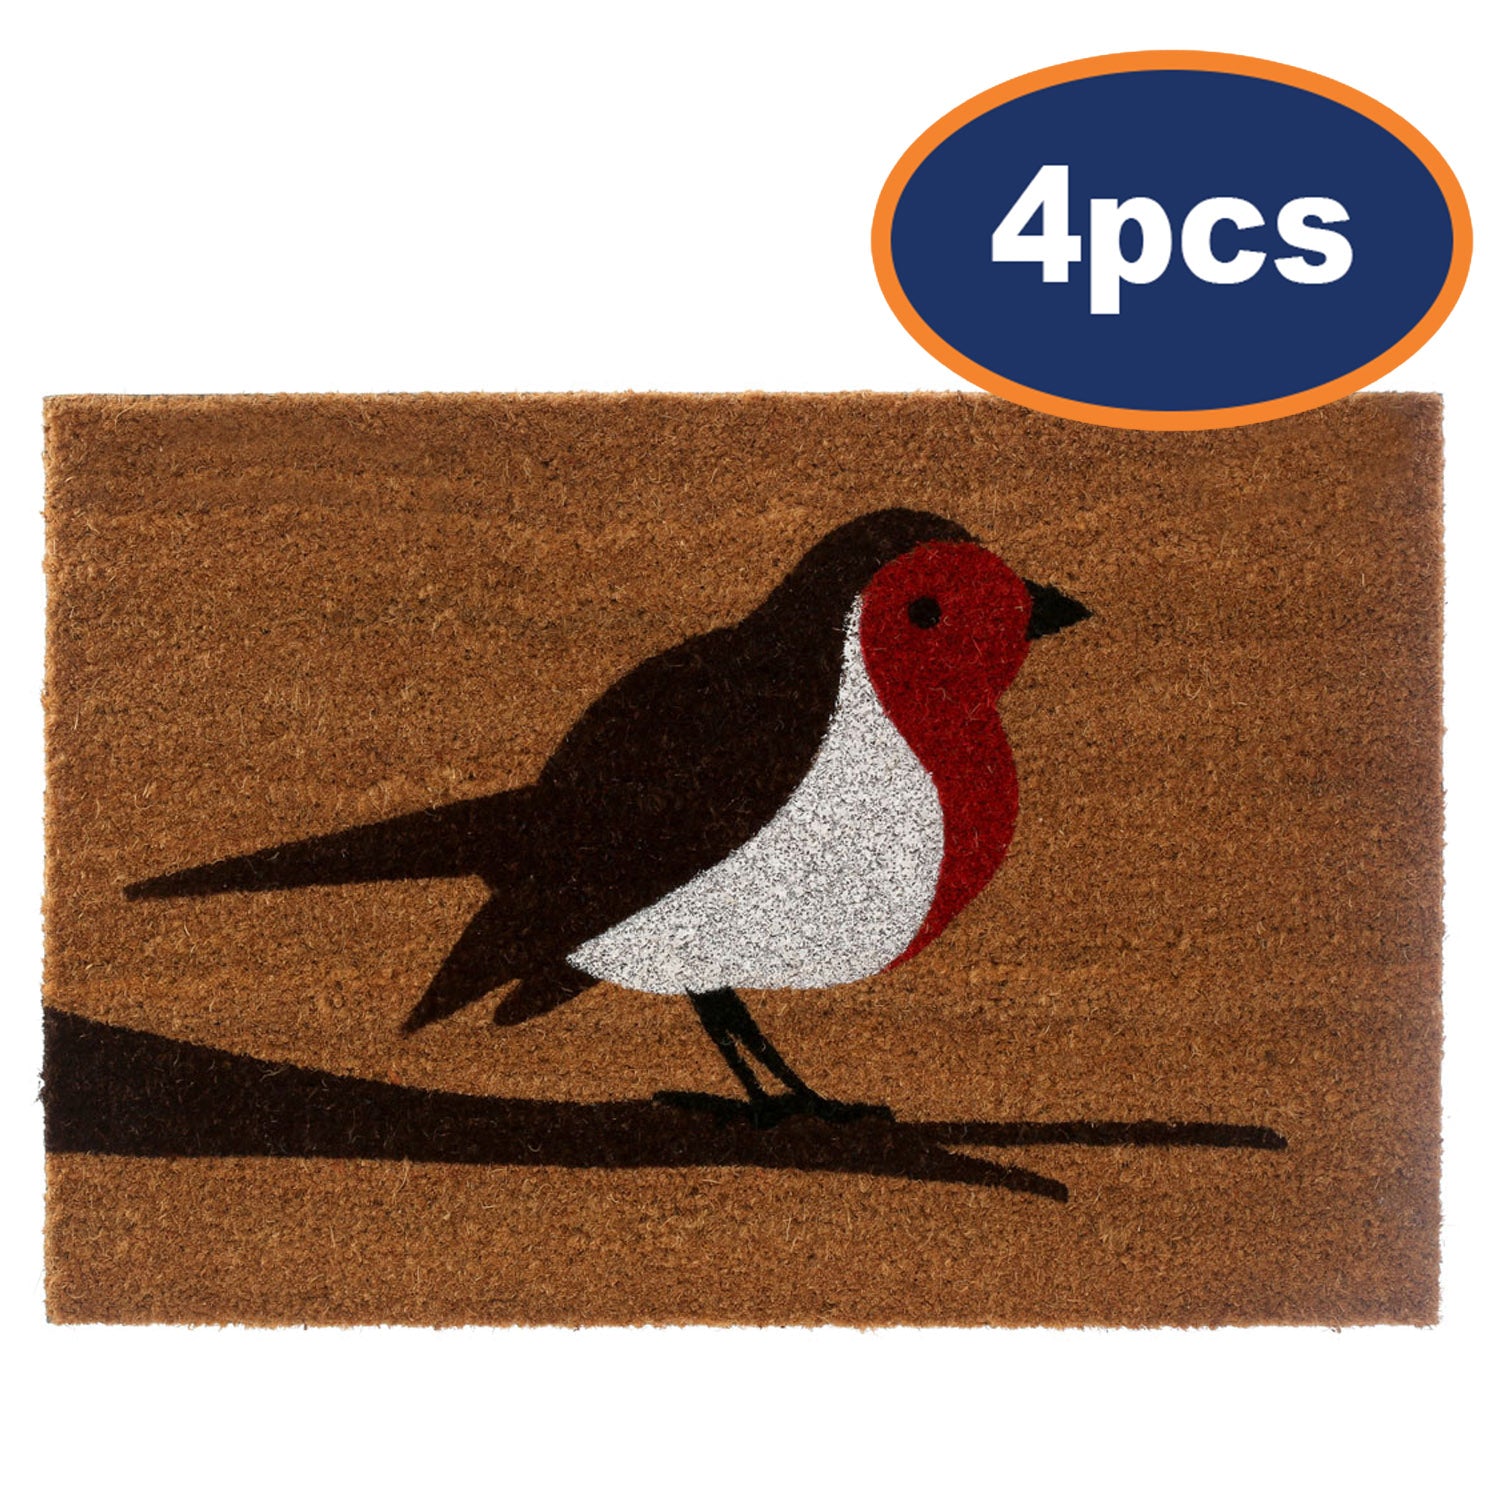 4pcs Durable Robin Coir Doormat